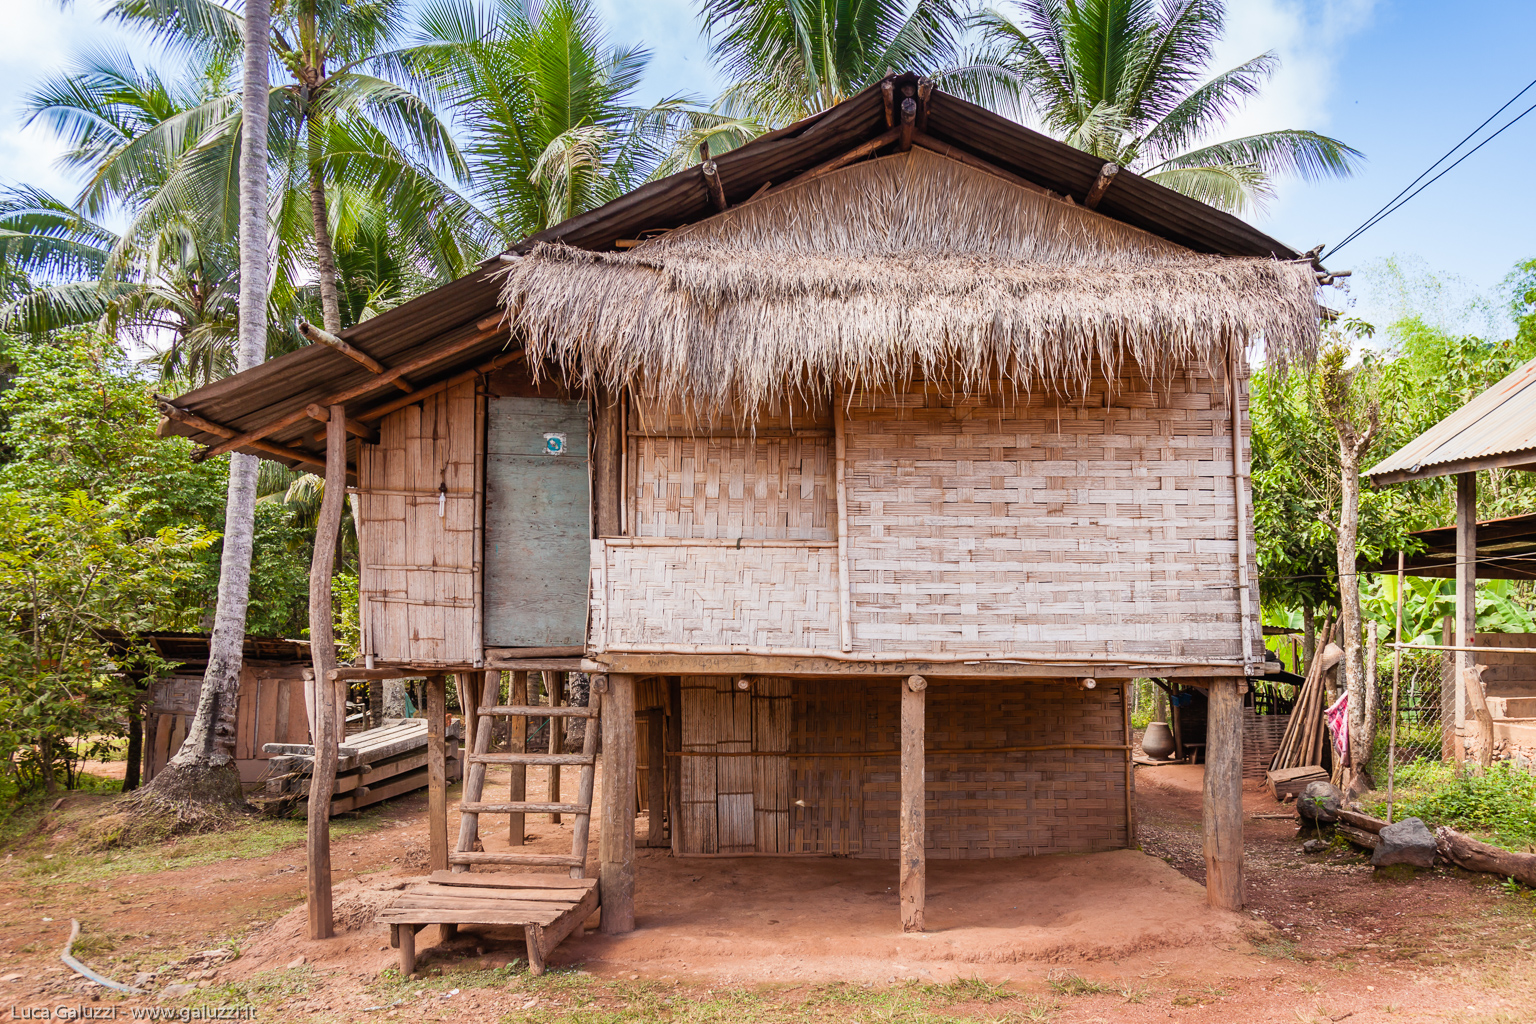 Casa in bambù